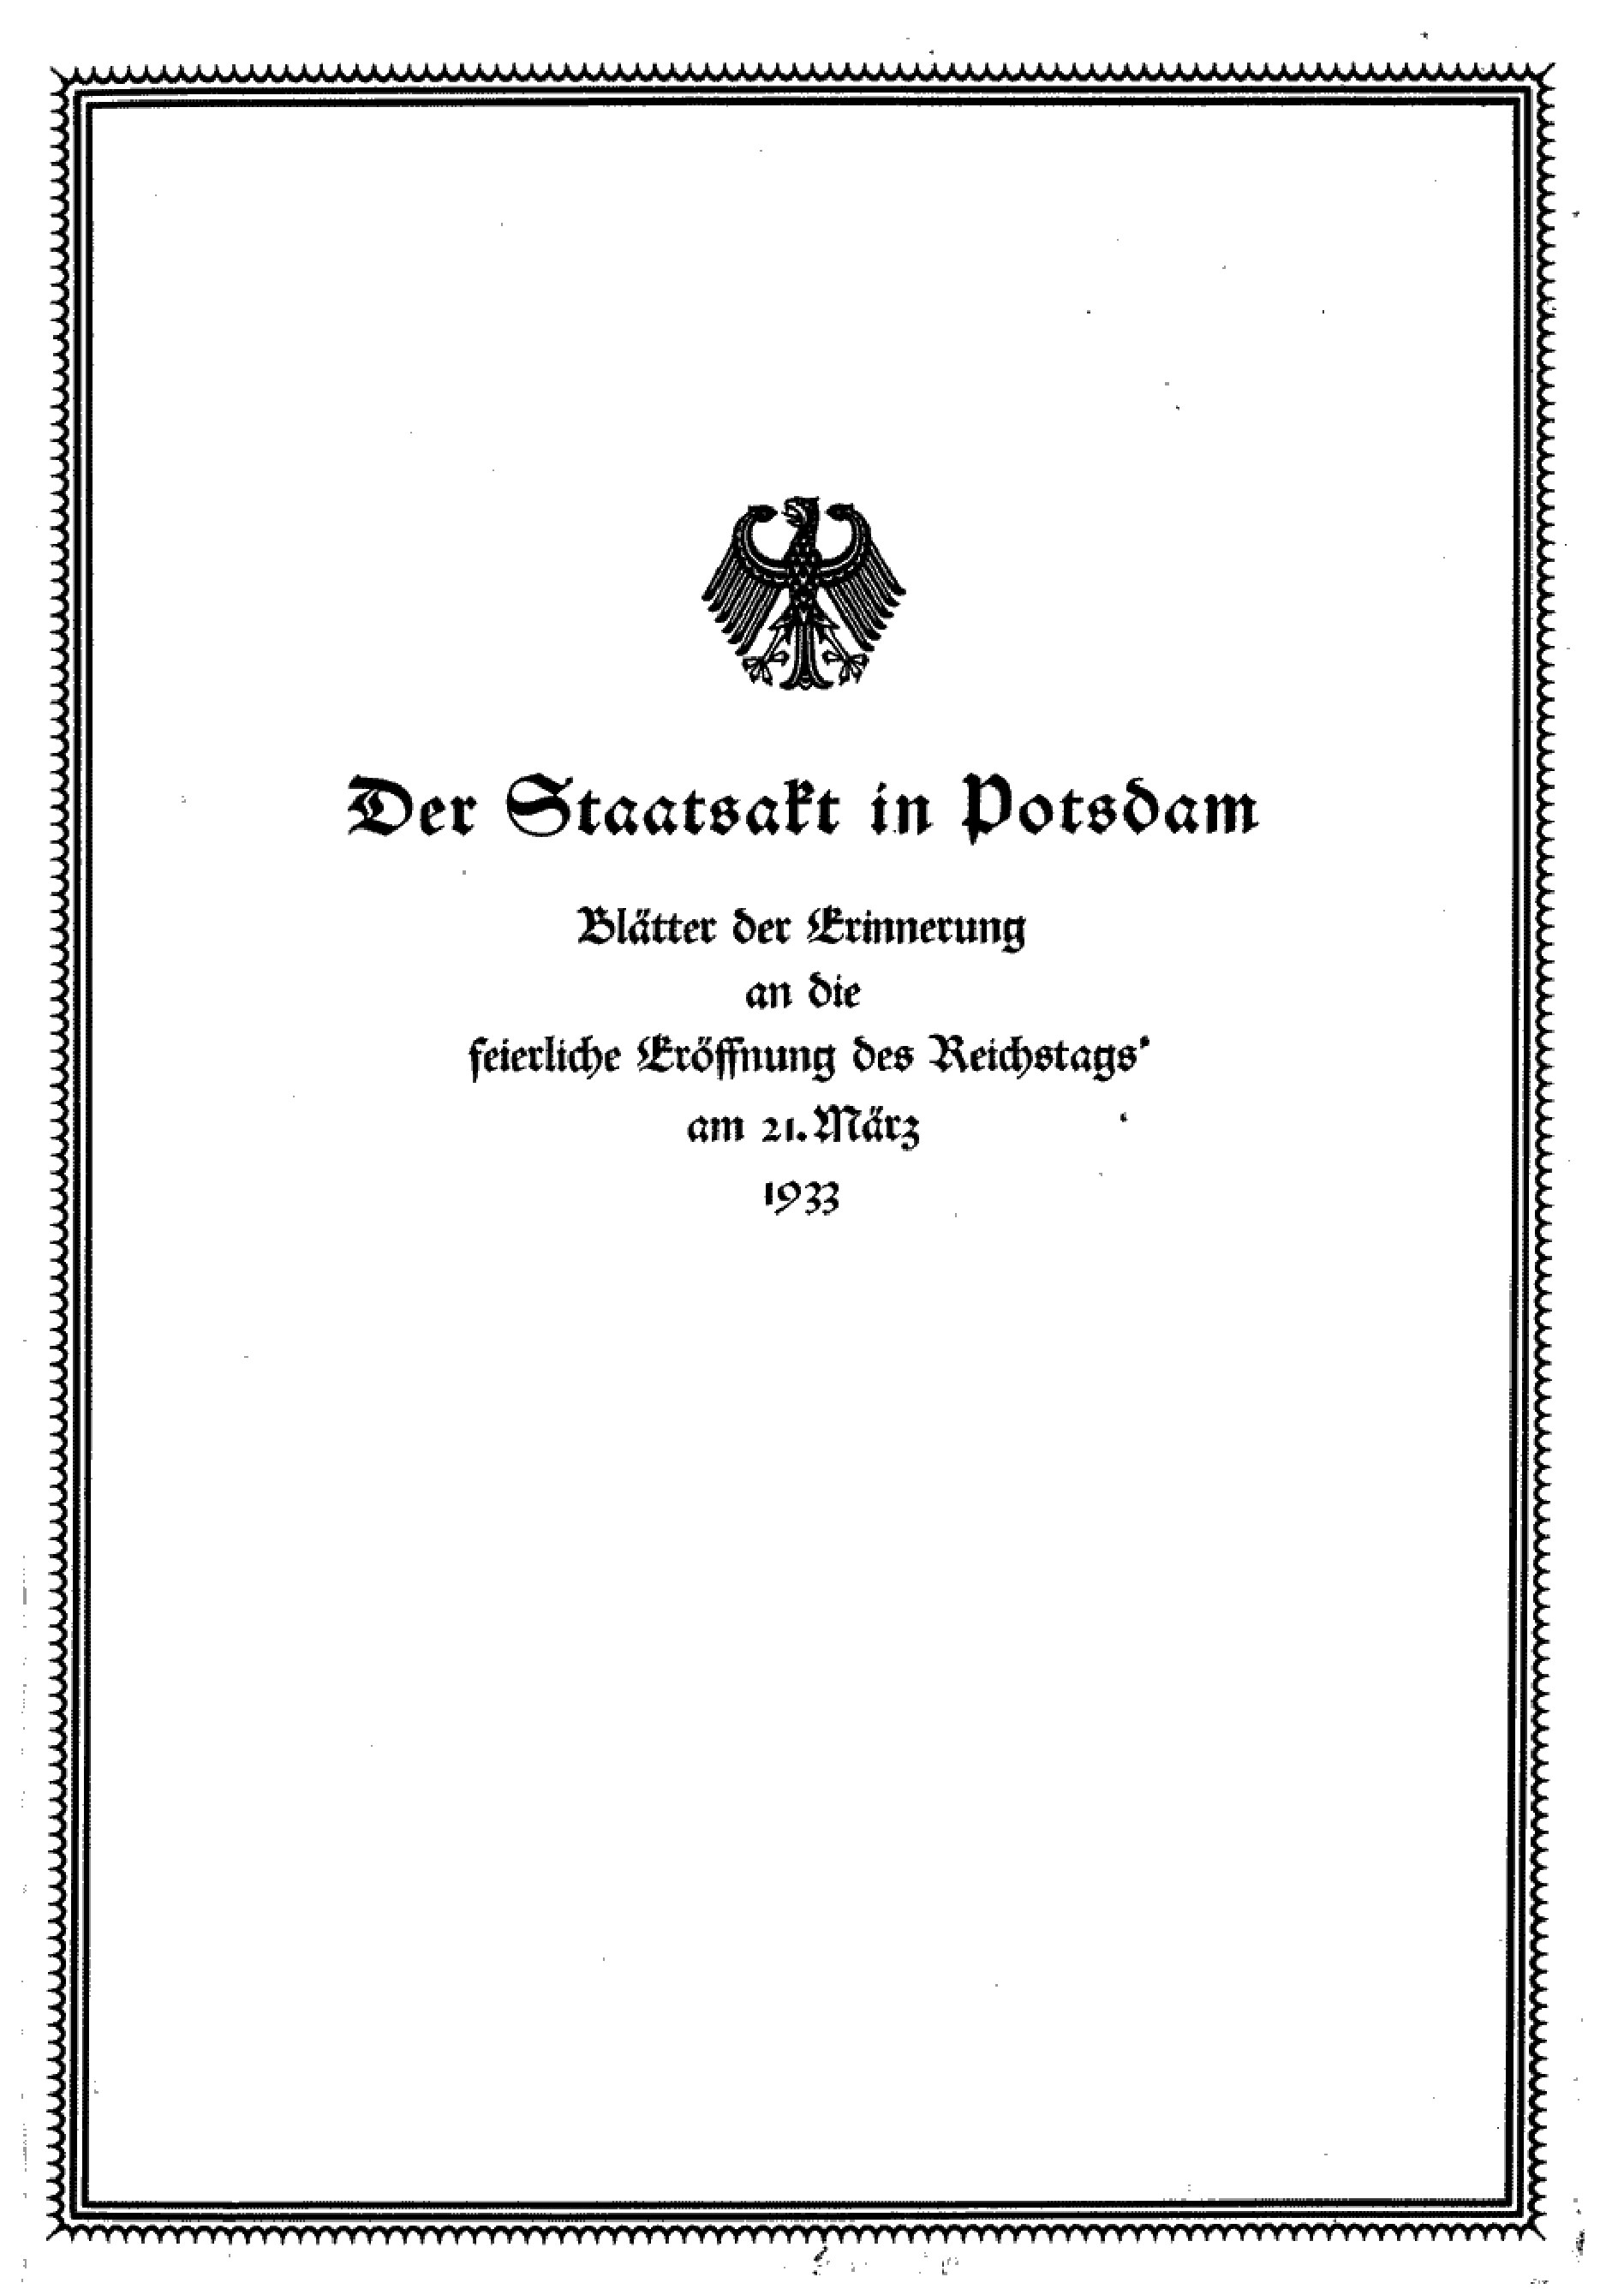 Der Staatsakt in Potsdam am 21. März 1933 (14 S., Scan, Fraktur)